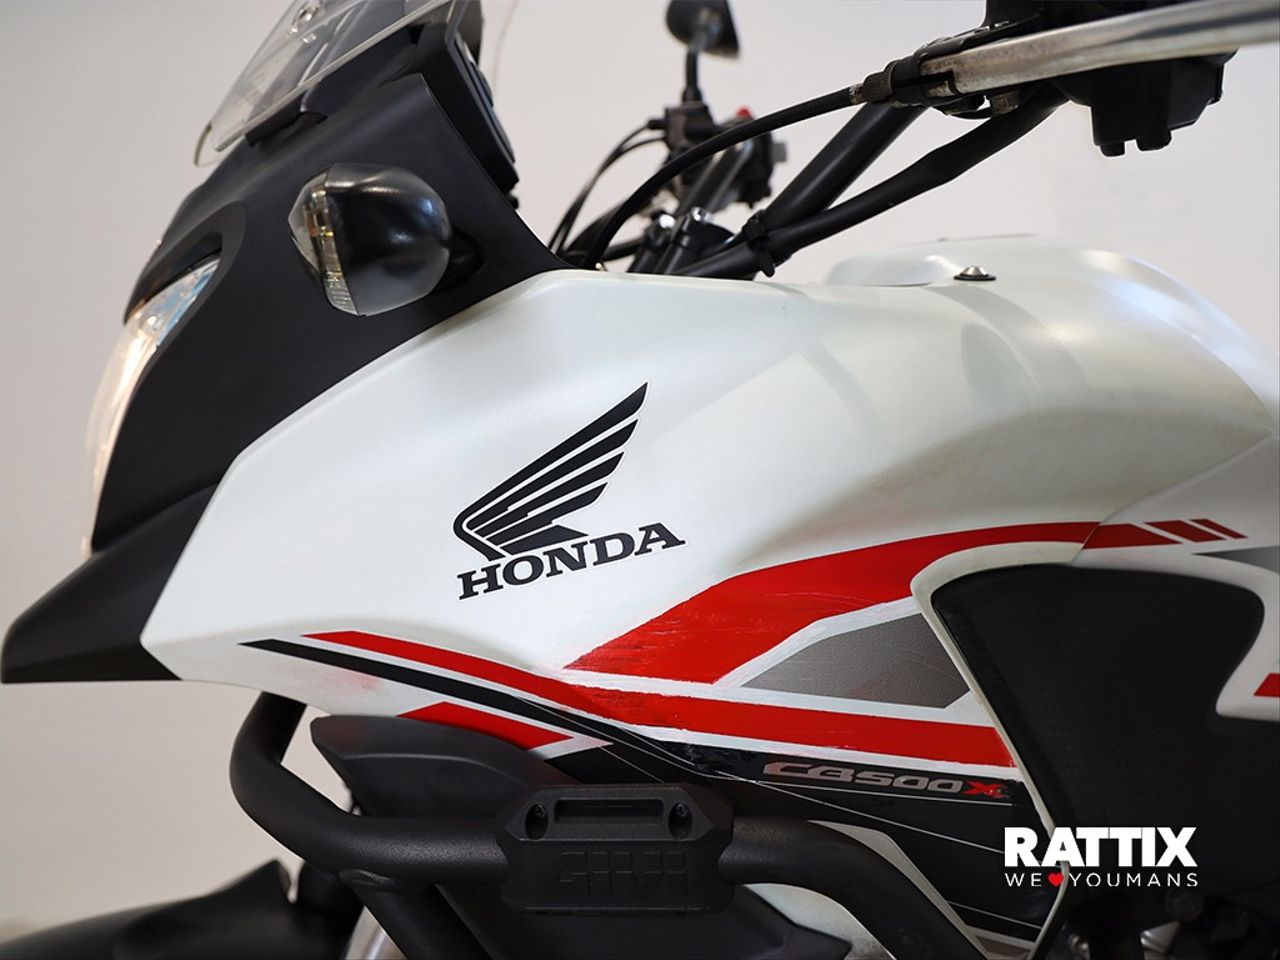 Moto HONDA CB 500 X ABS de seguna mano del año 2015 en Barcelona